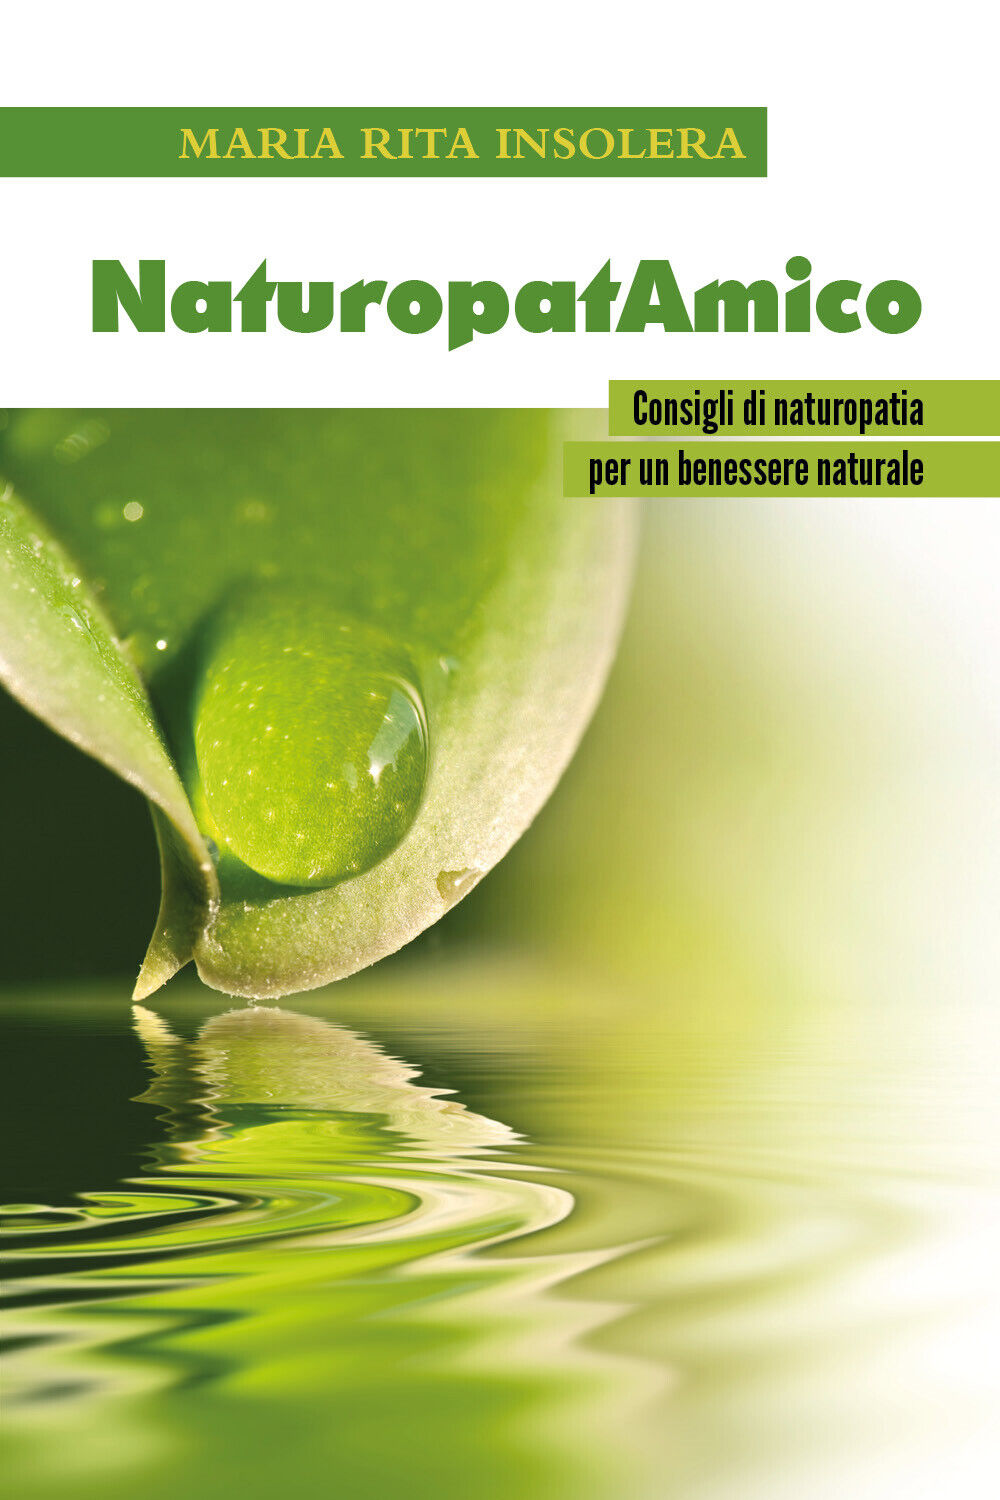 NaturopatAmico. Consigli di naturopatia per un benessere naturale di Maria Rita  libro usato